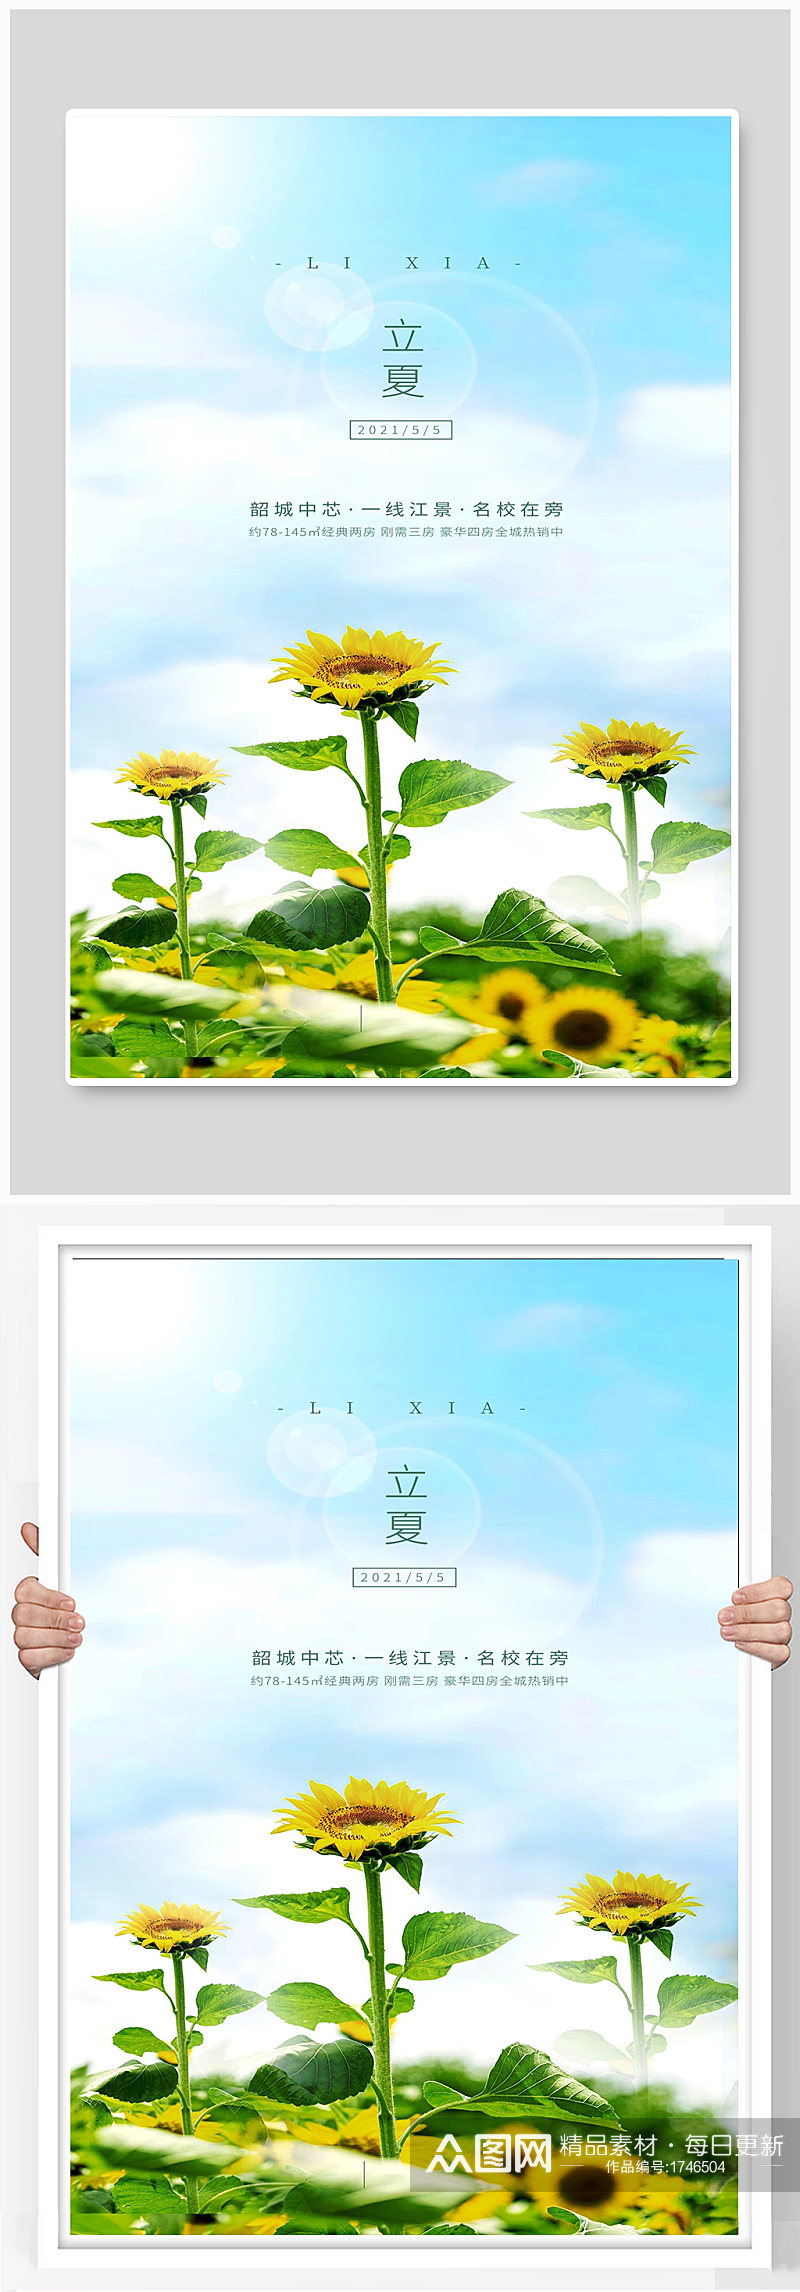 太阳花宣传海报设计素材